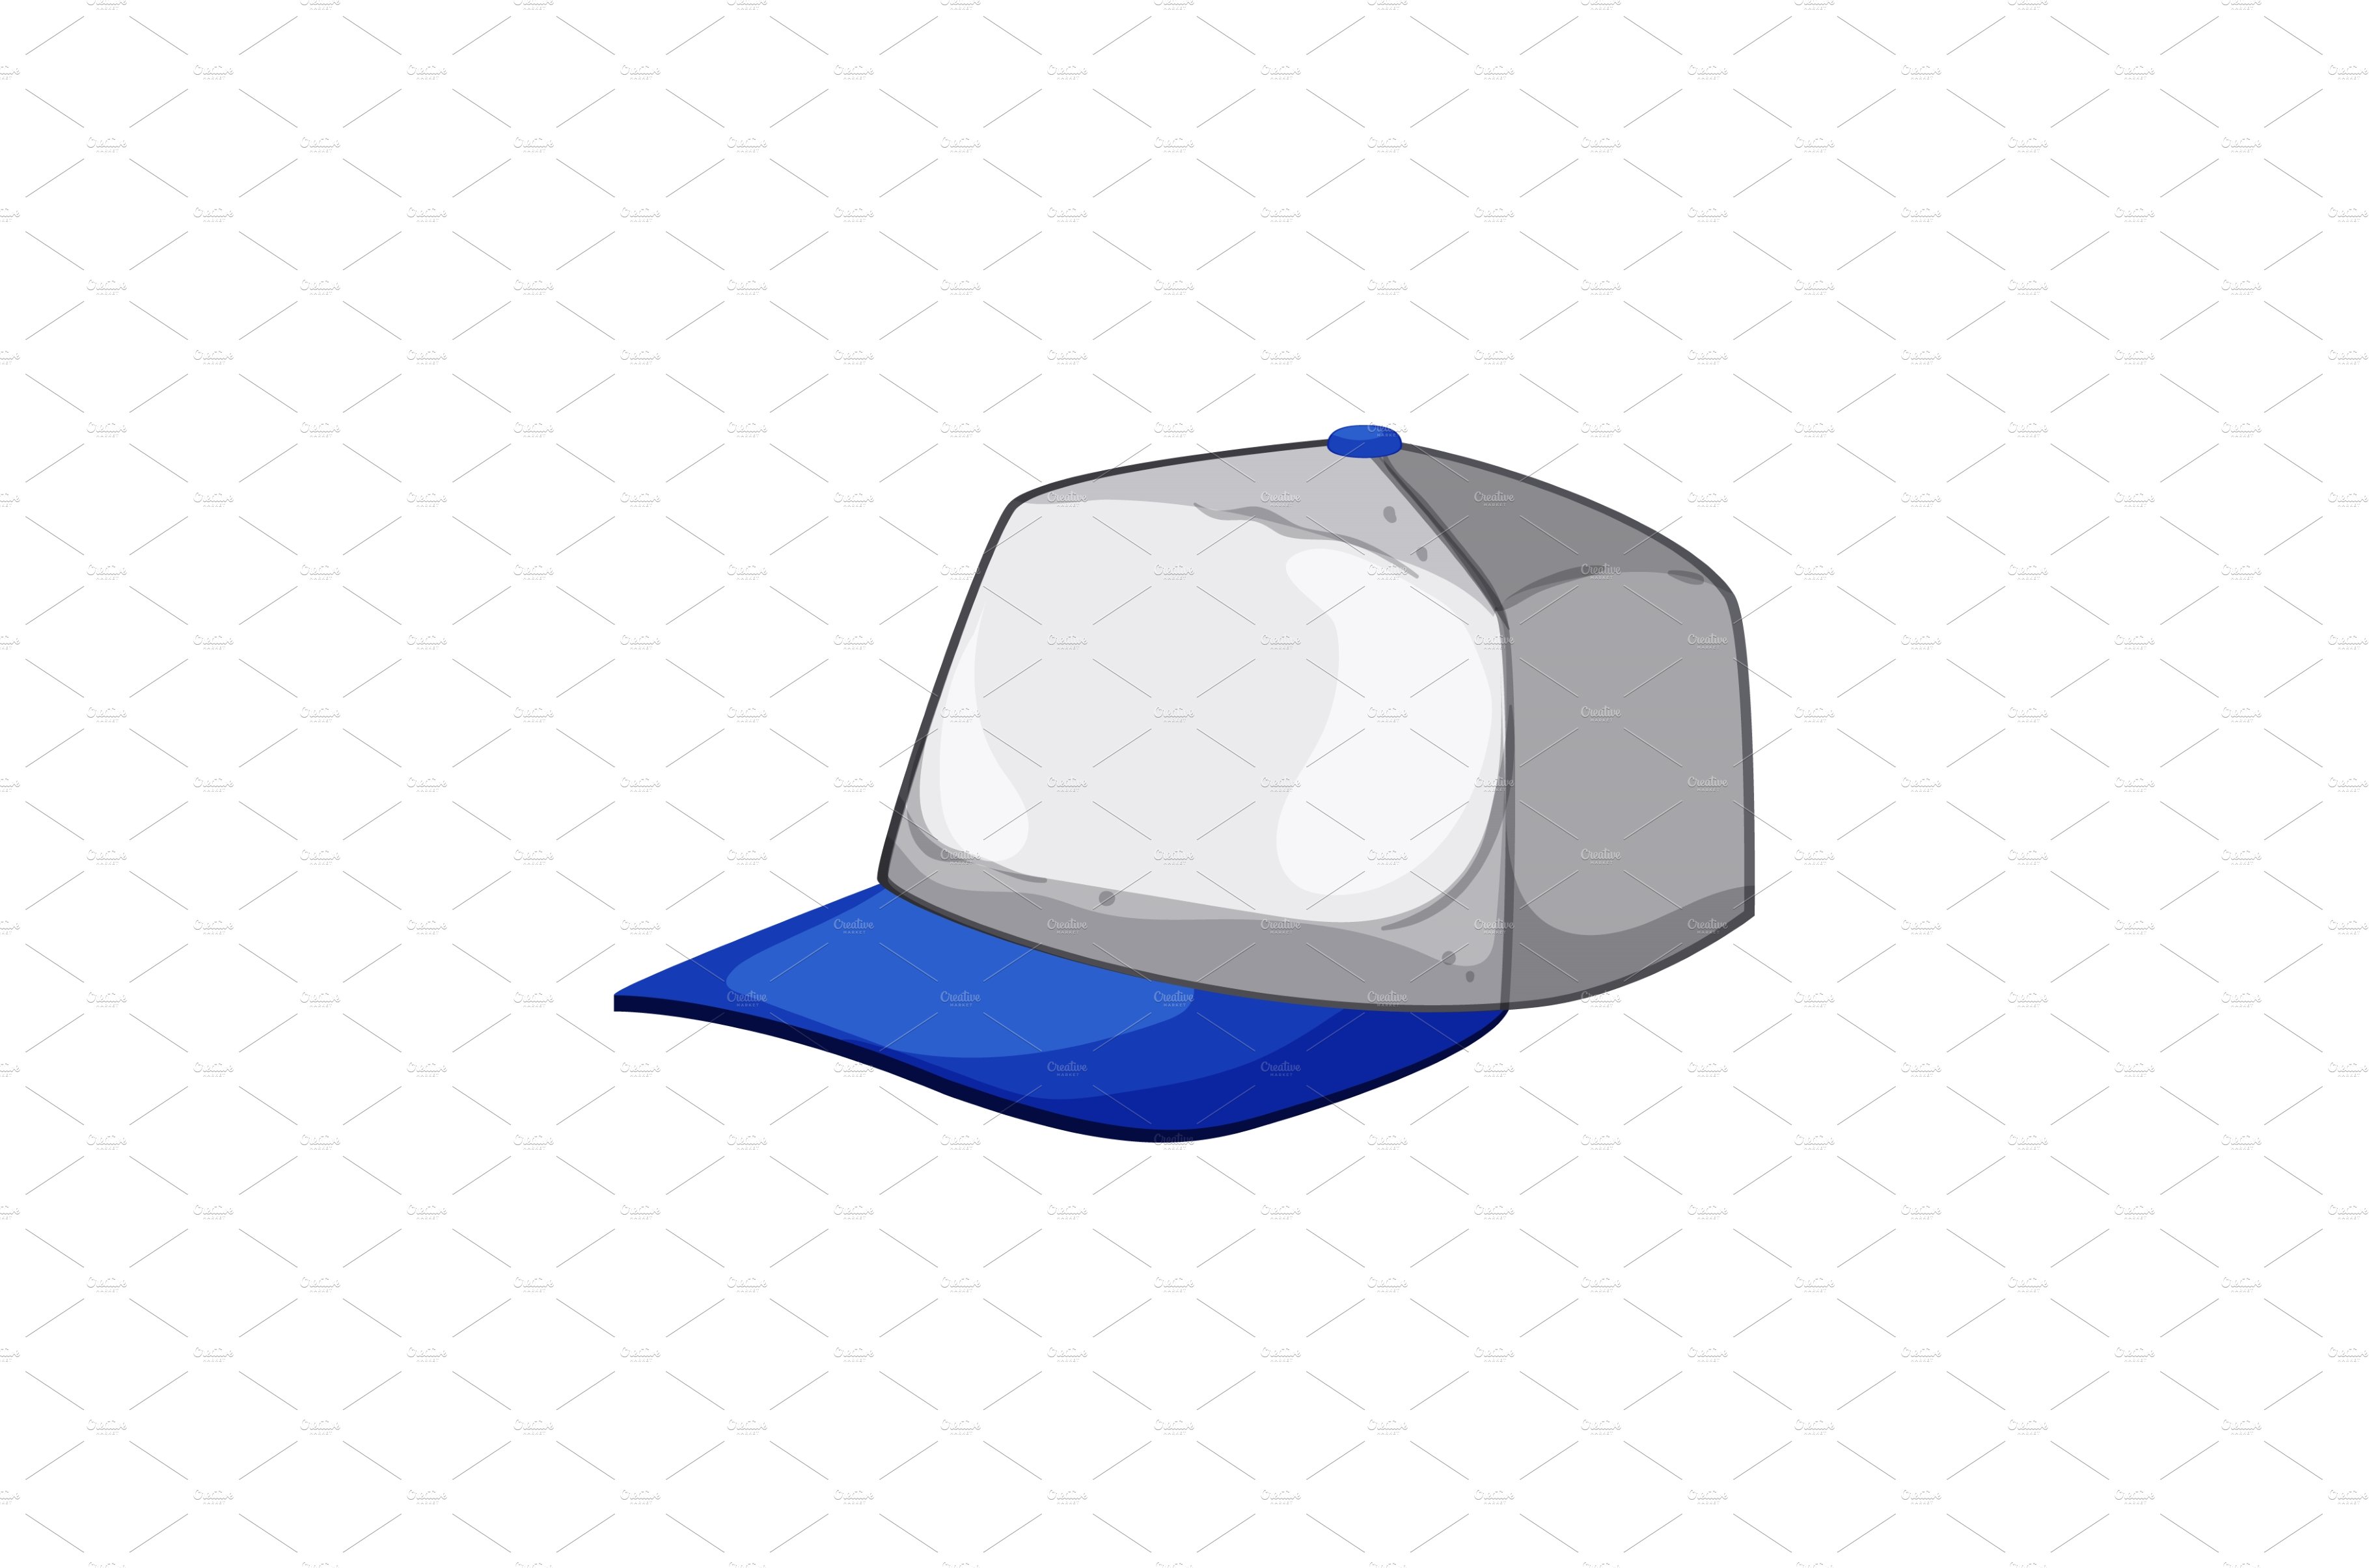 white baseball cap cartoon vector cover image.